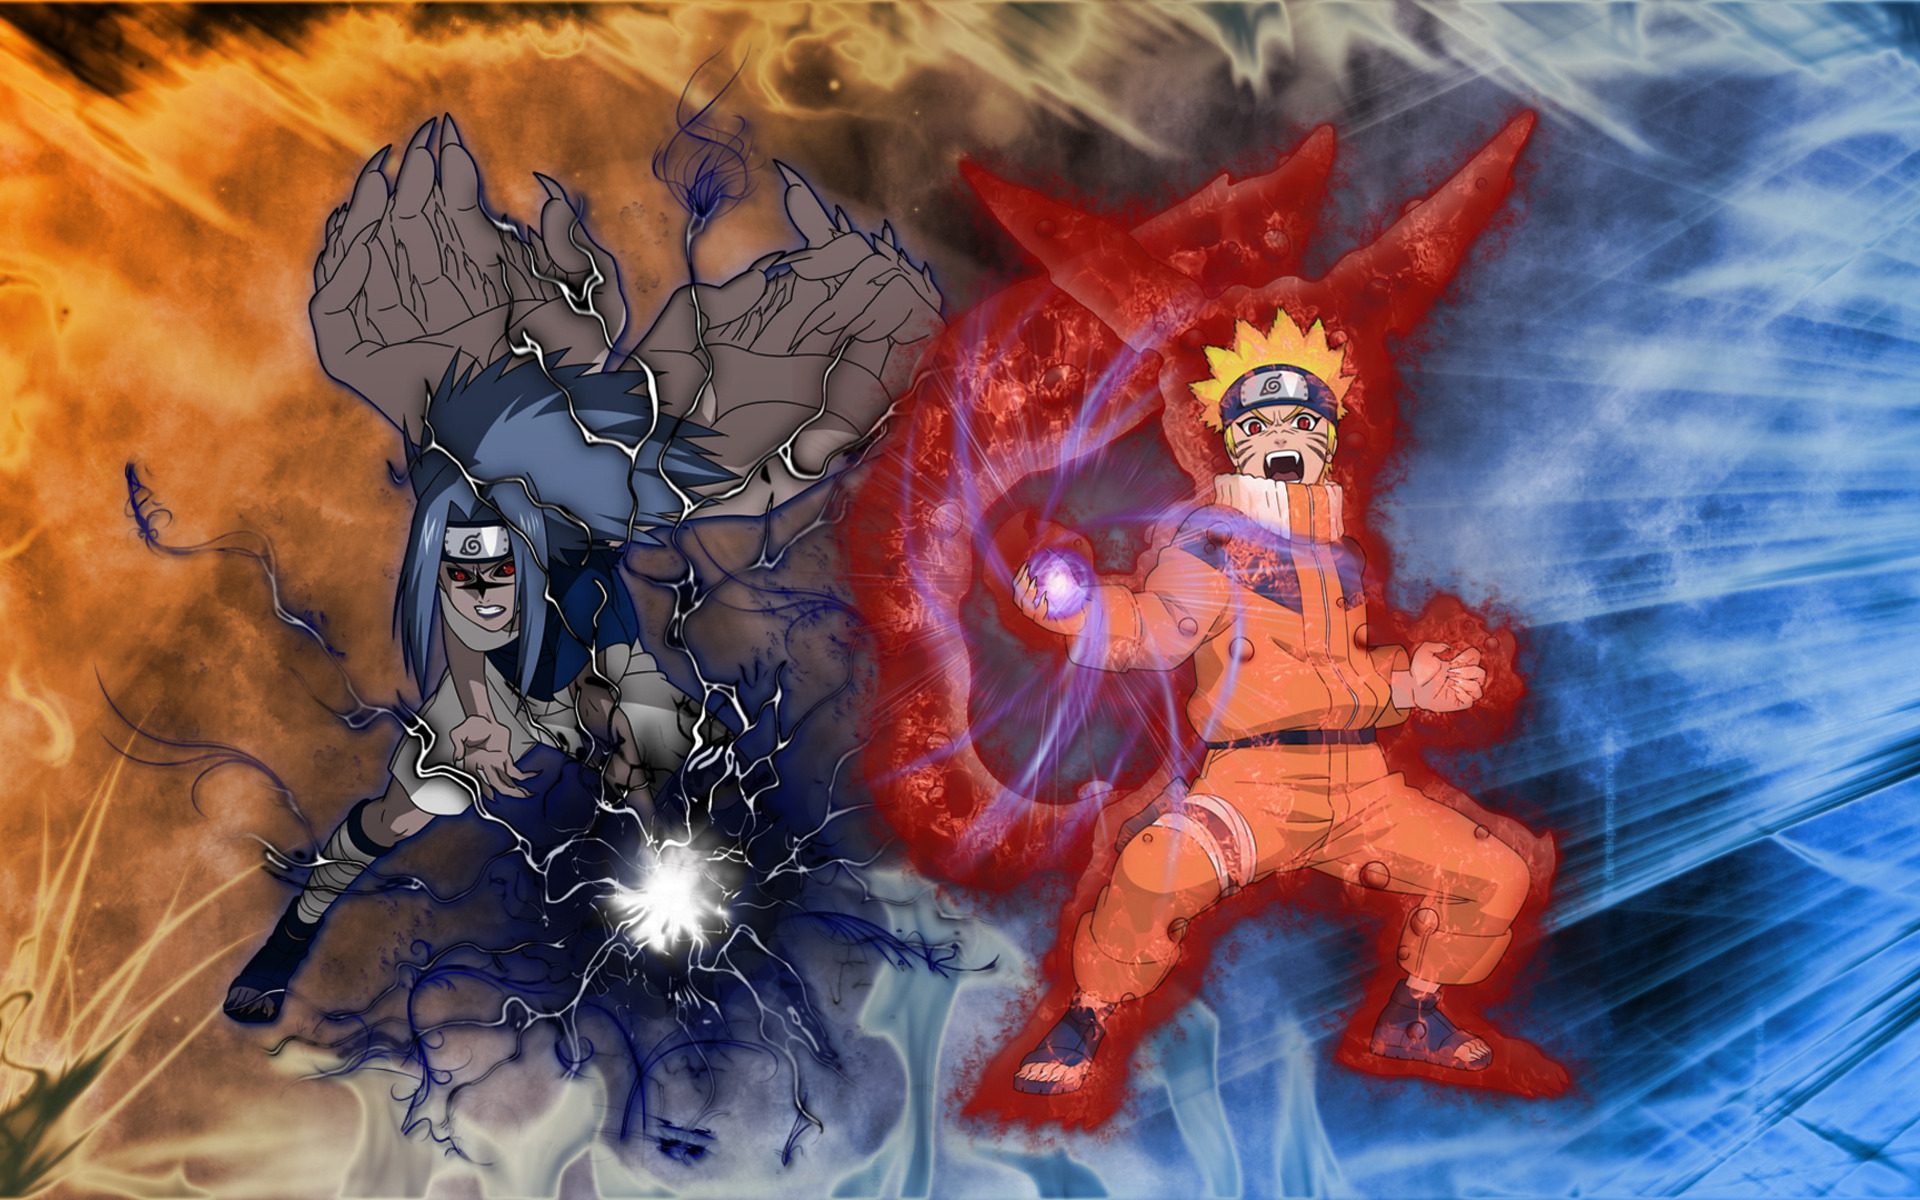 Fwallpaper Pics Anime Naruto Sasuke And Jpg